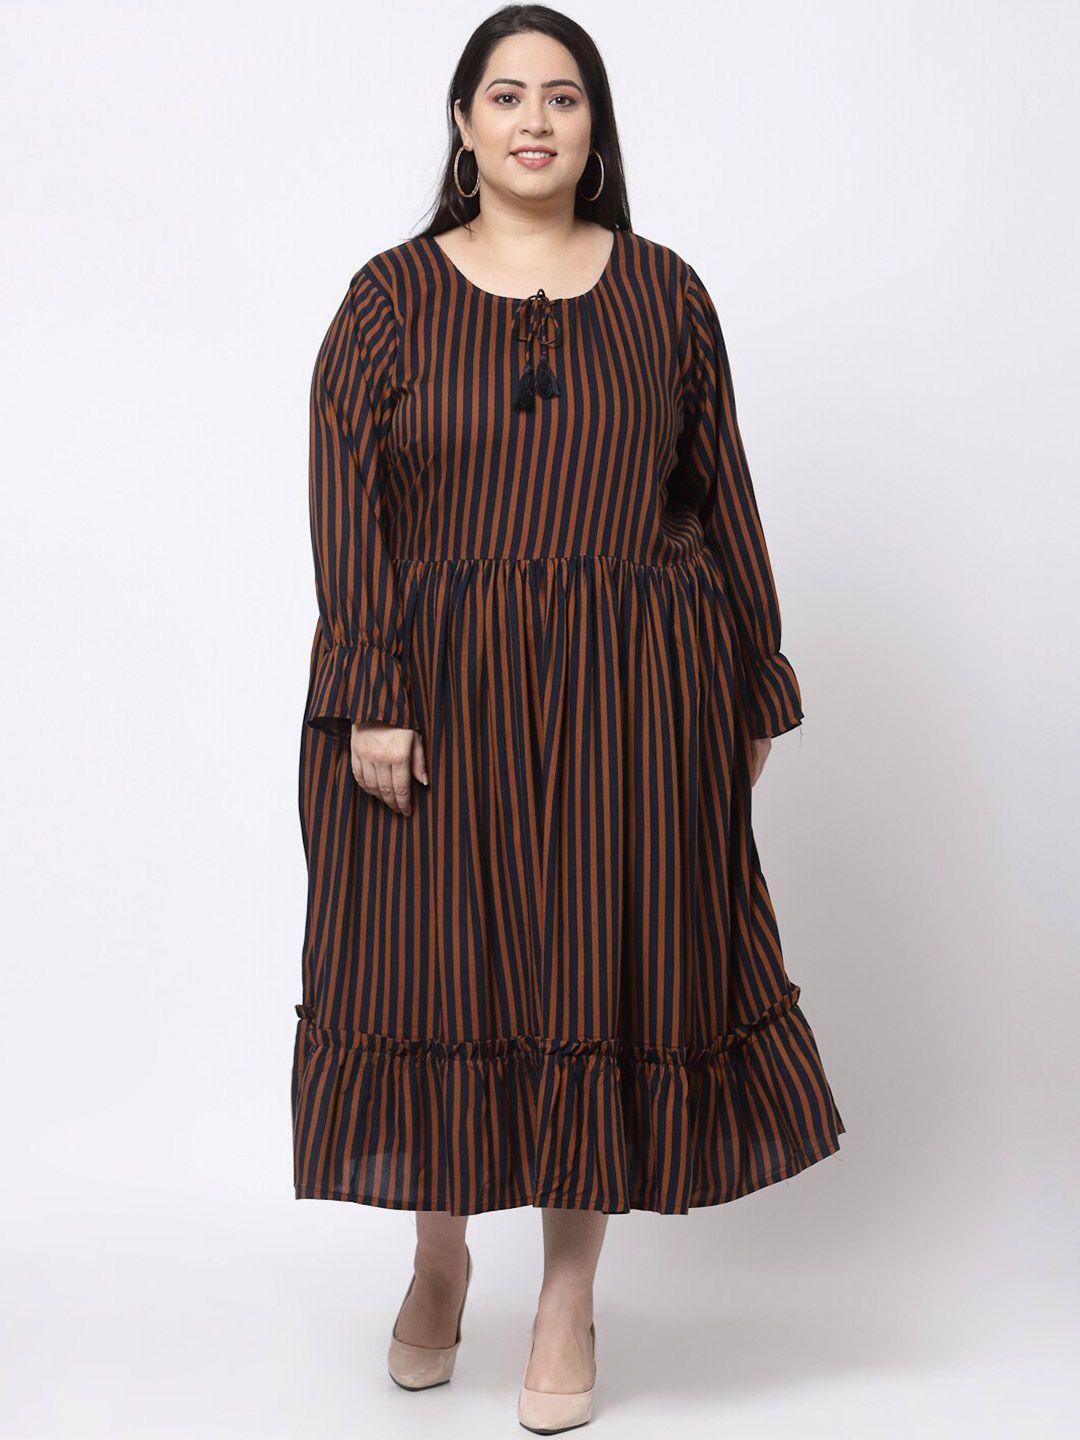 klotthe brown striped midi dress